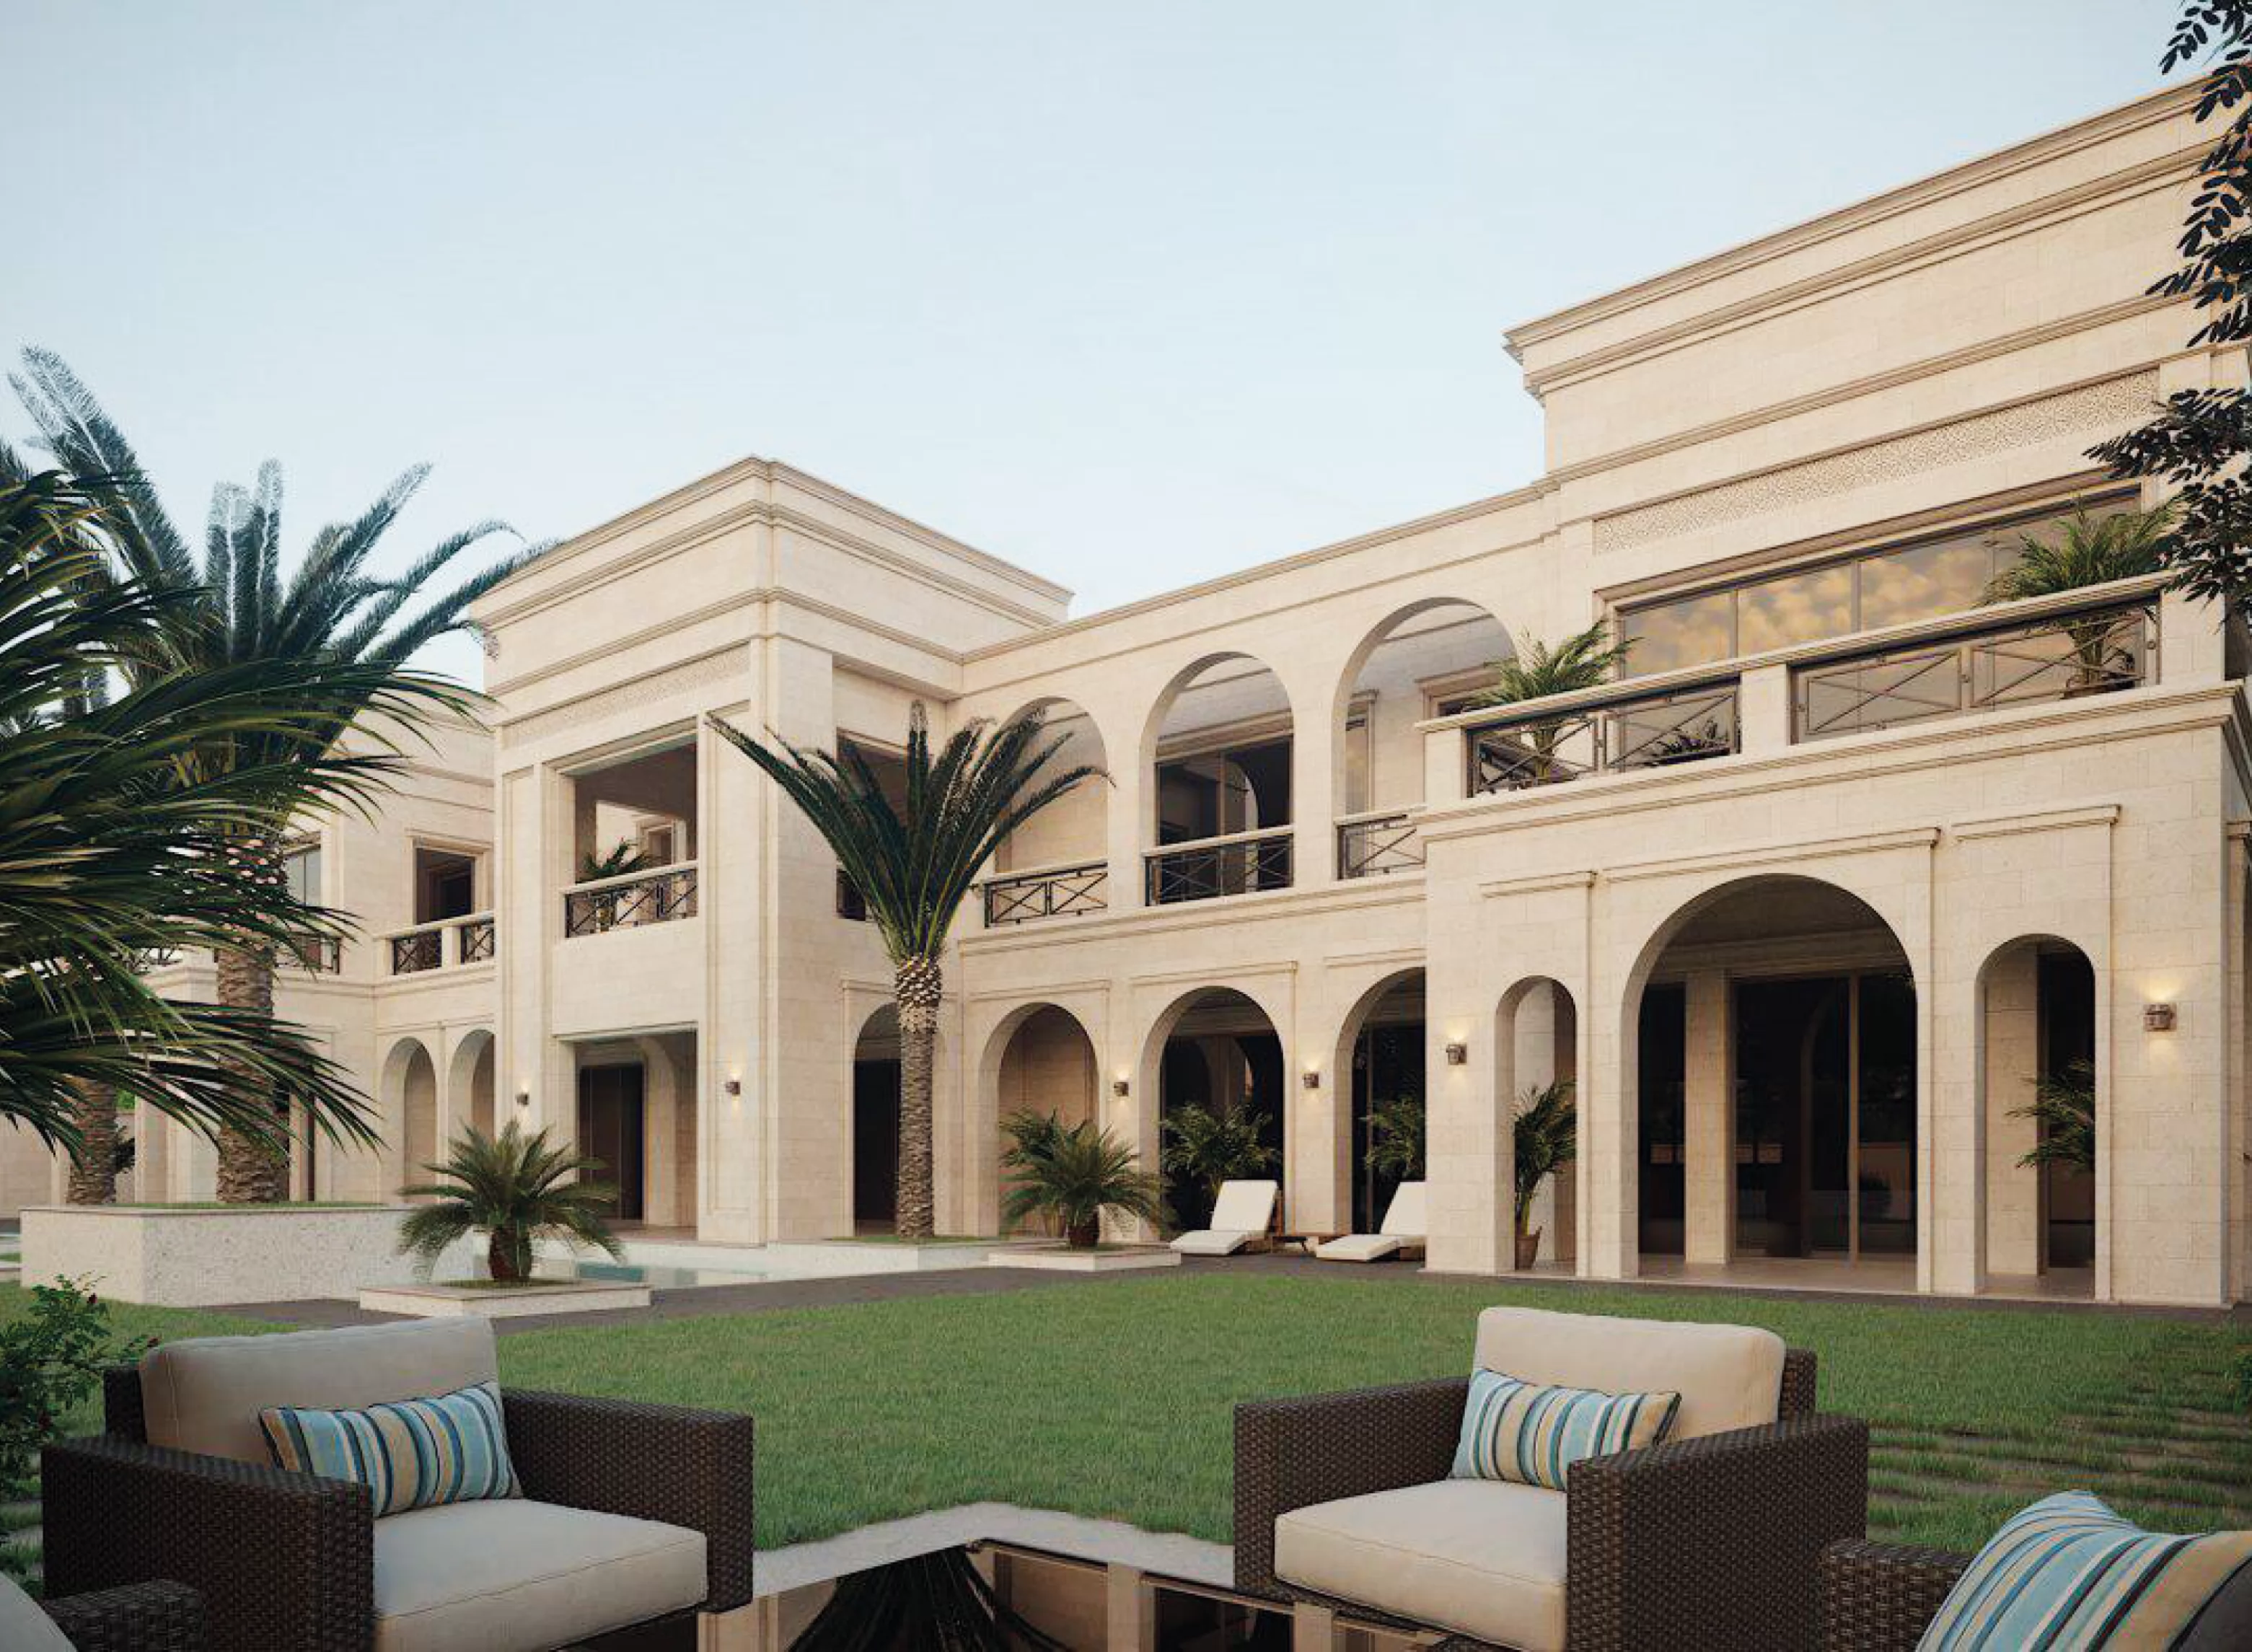 Modern Villa / Dubai / UAE